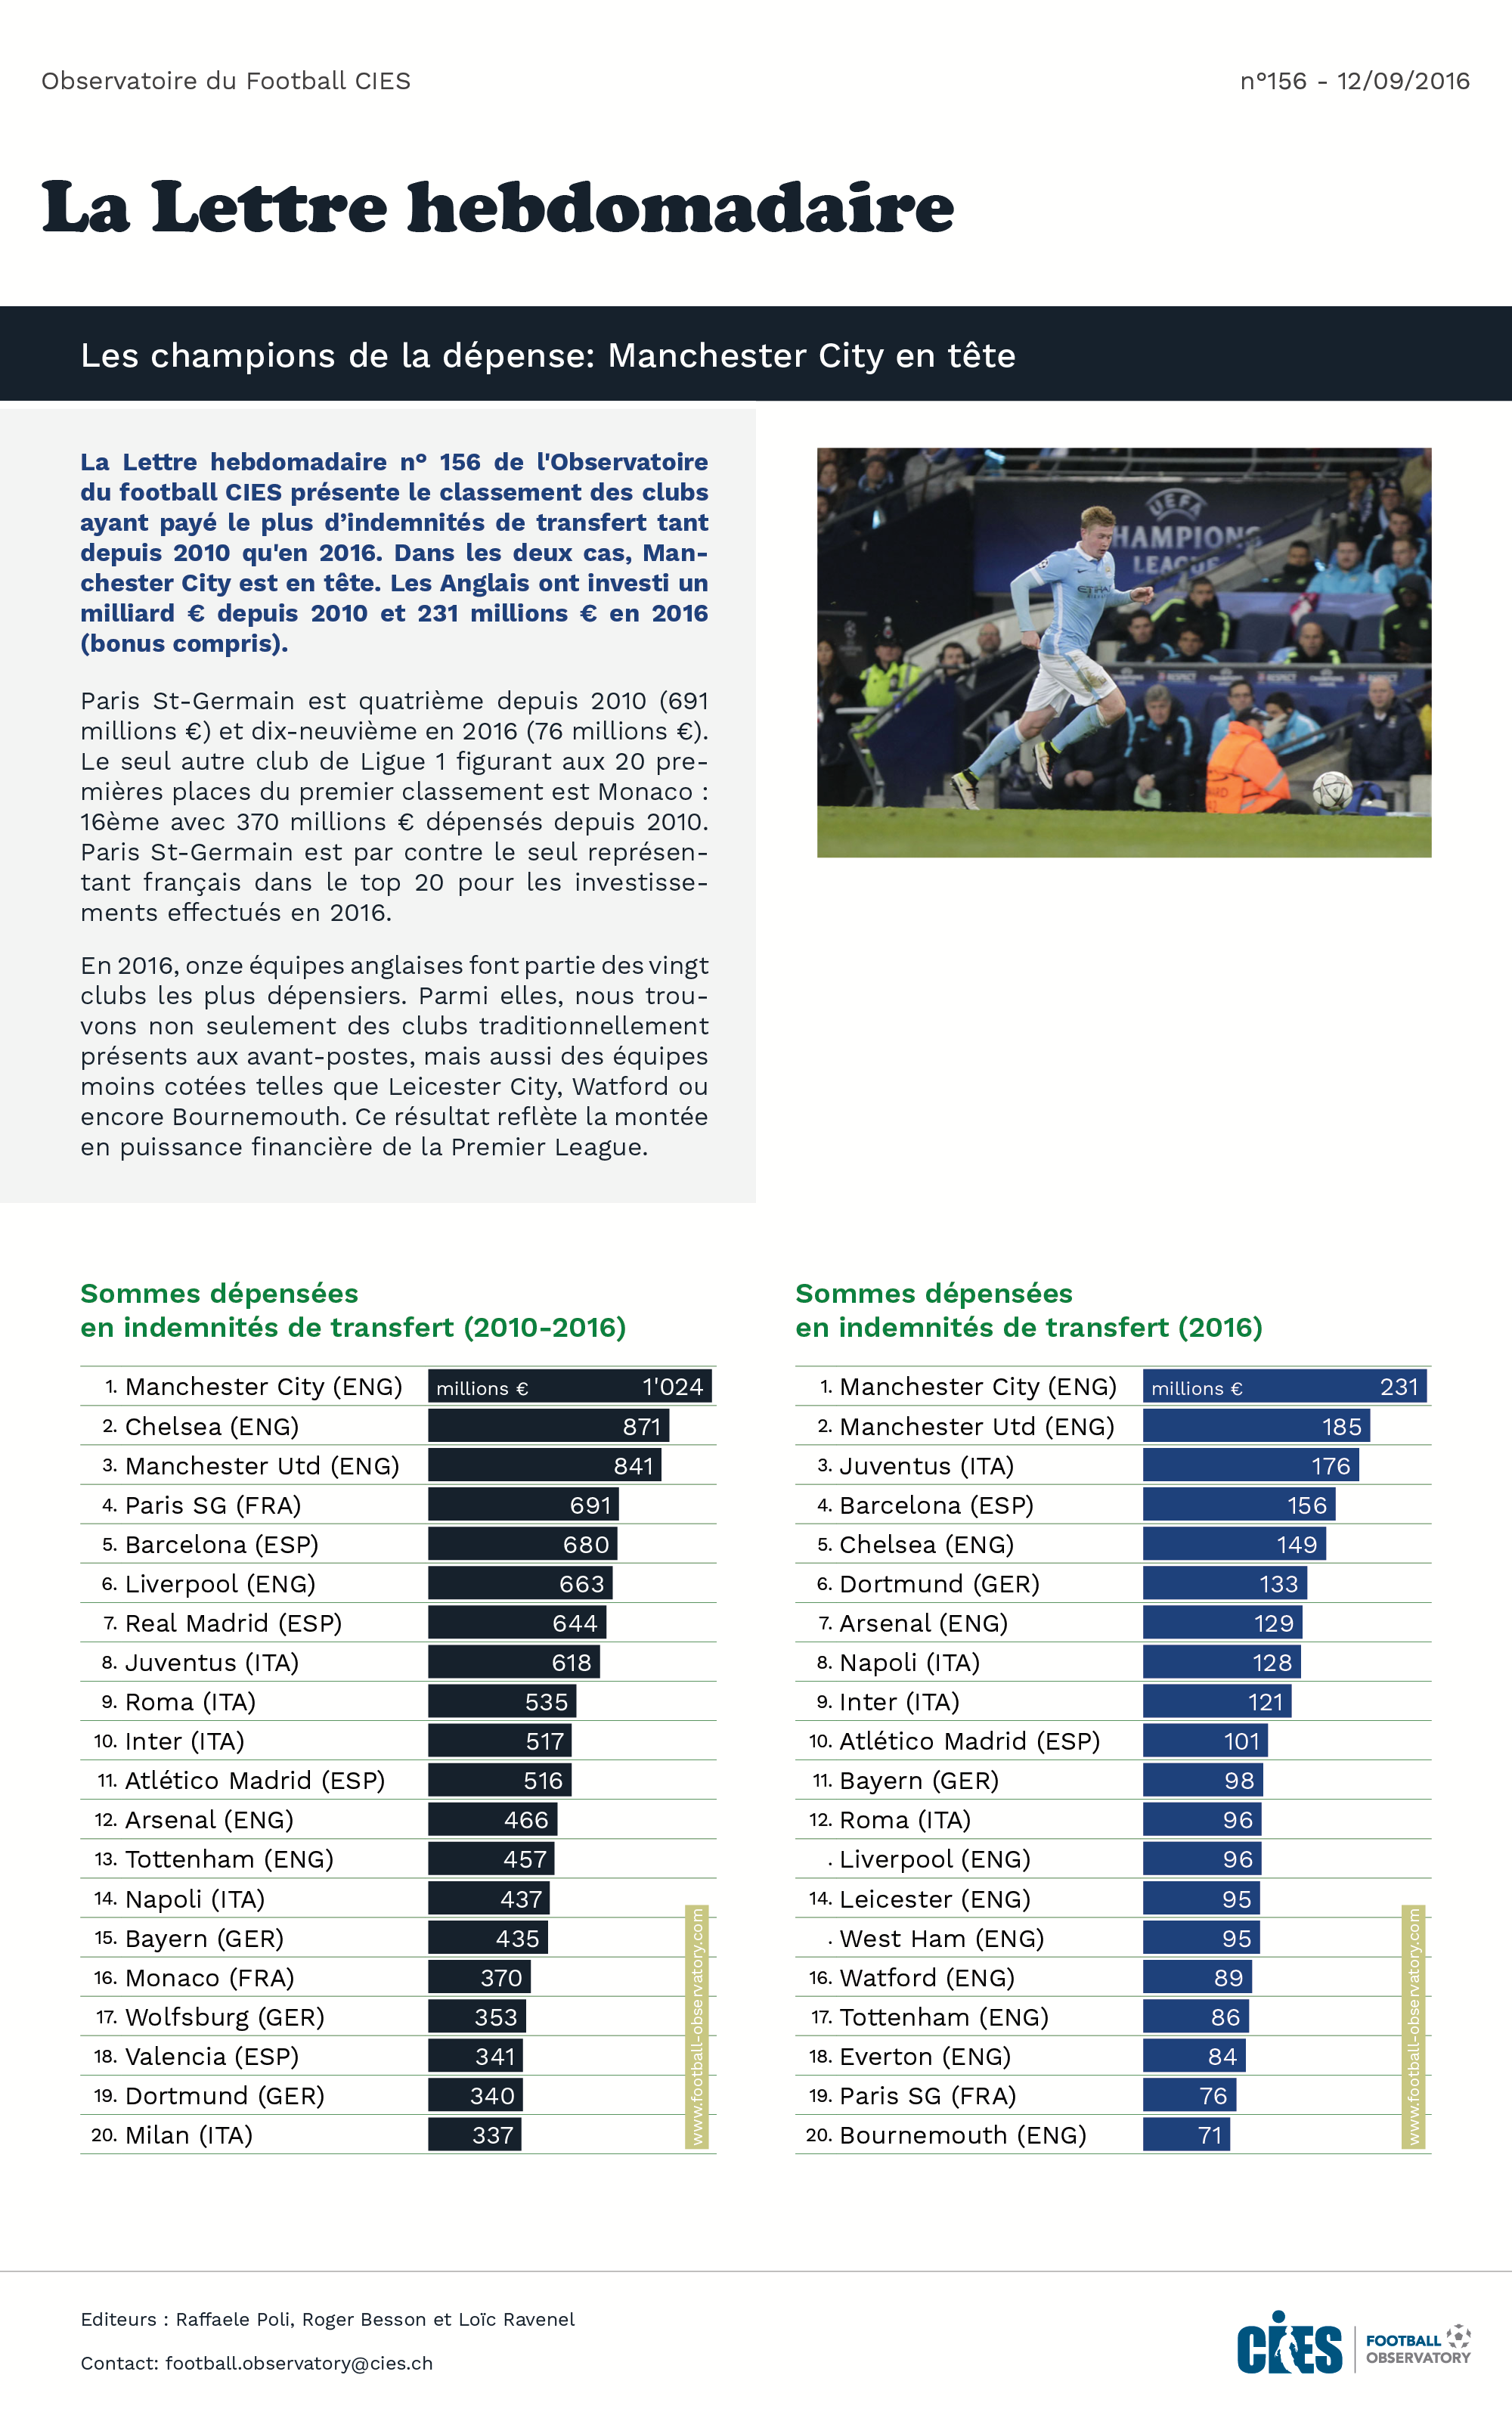 Tableau: Sommes dépensées en indemnités de transfert par les clubs du big-5 (2010-2016)